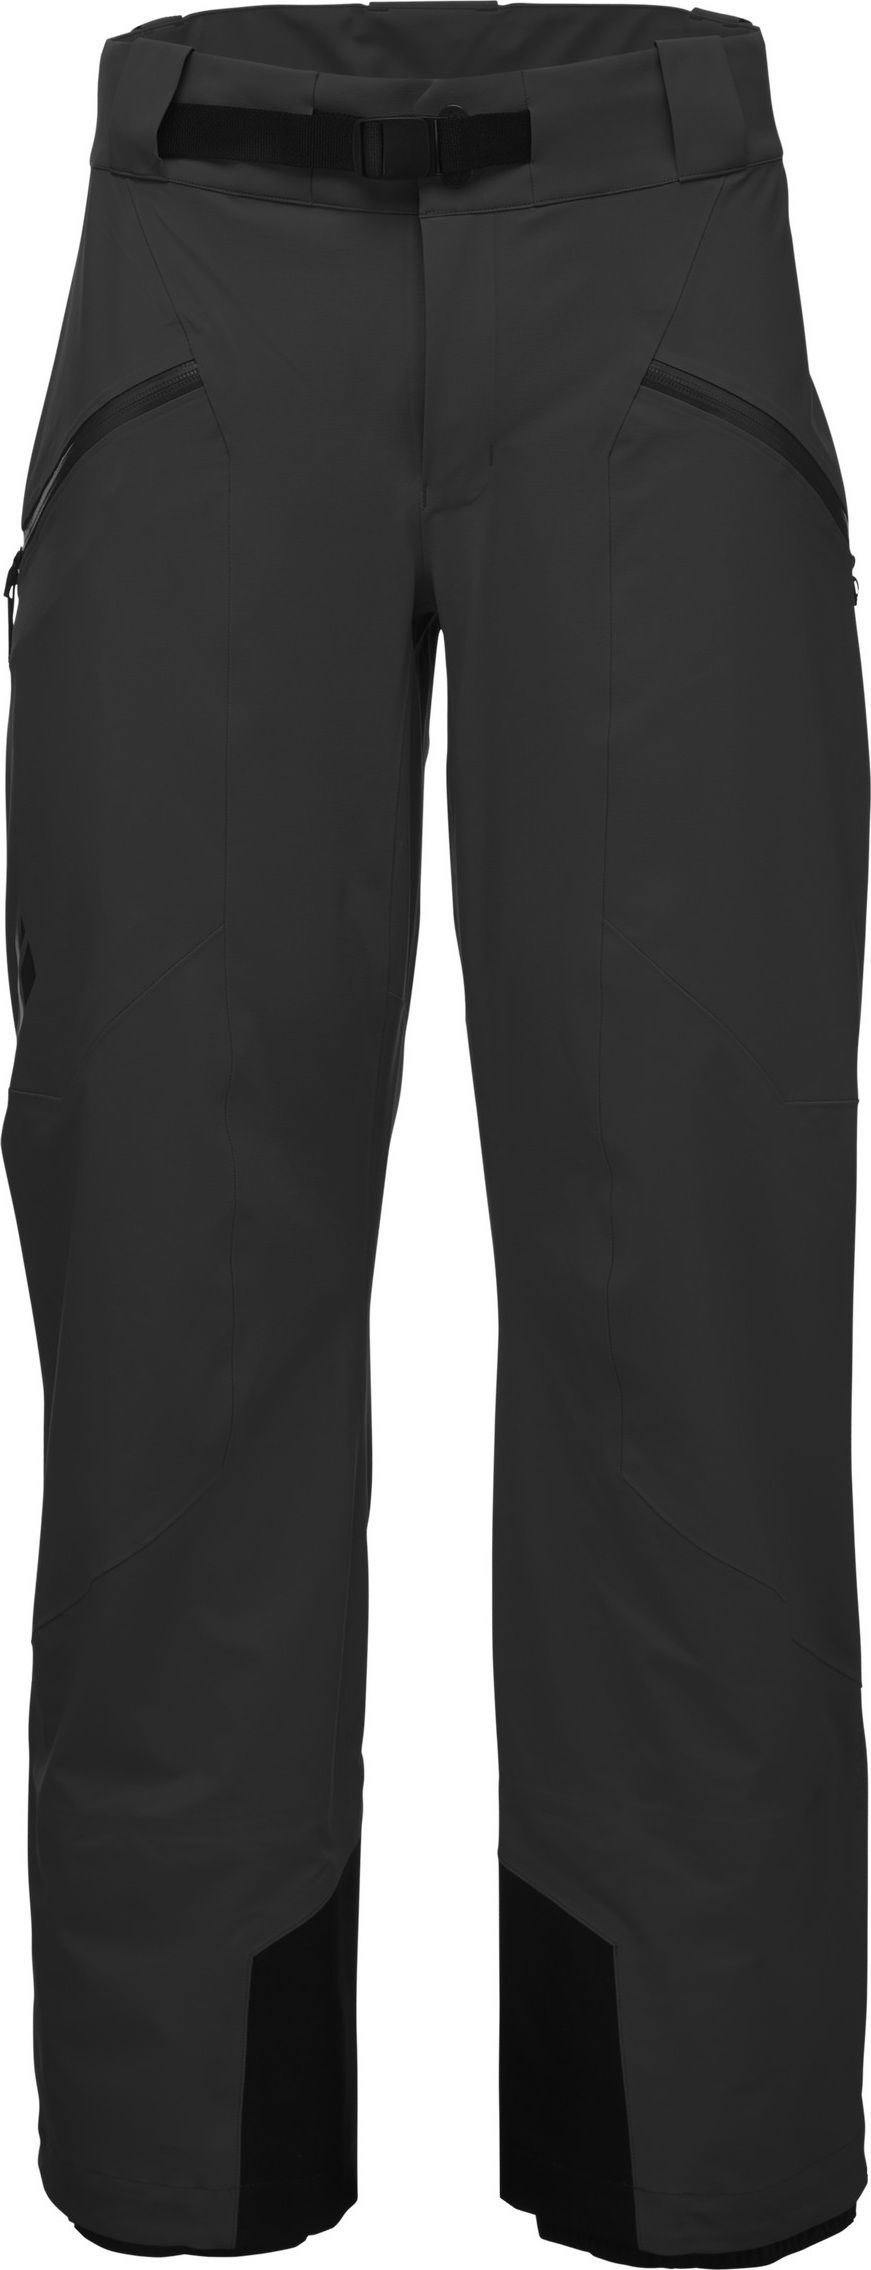 Men's Recon Stretch Ski Pants Black